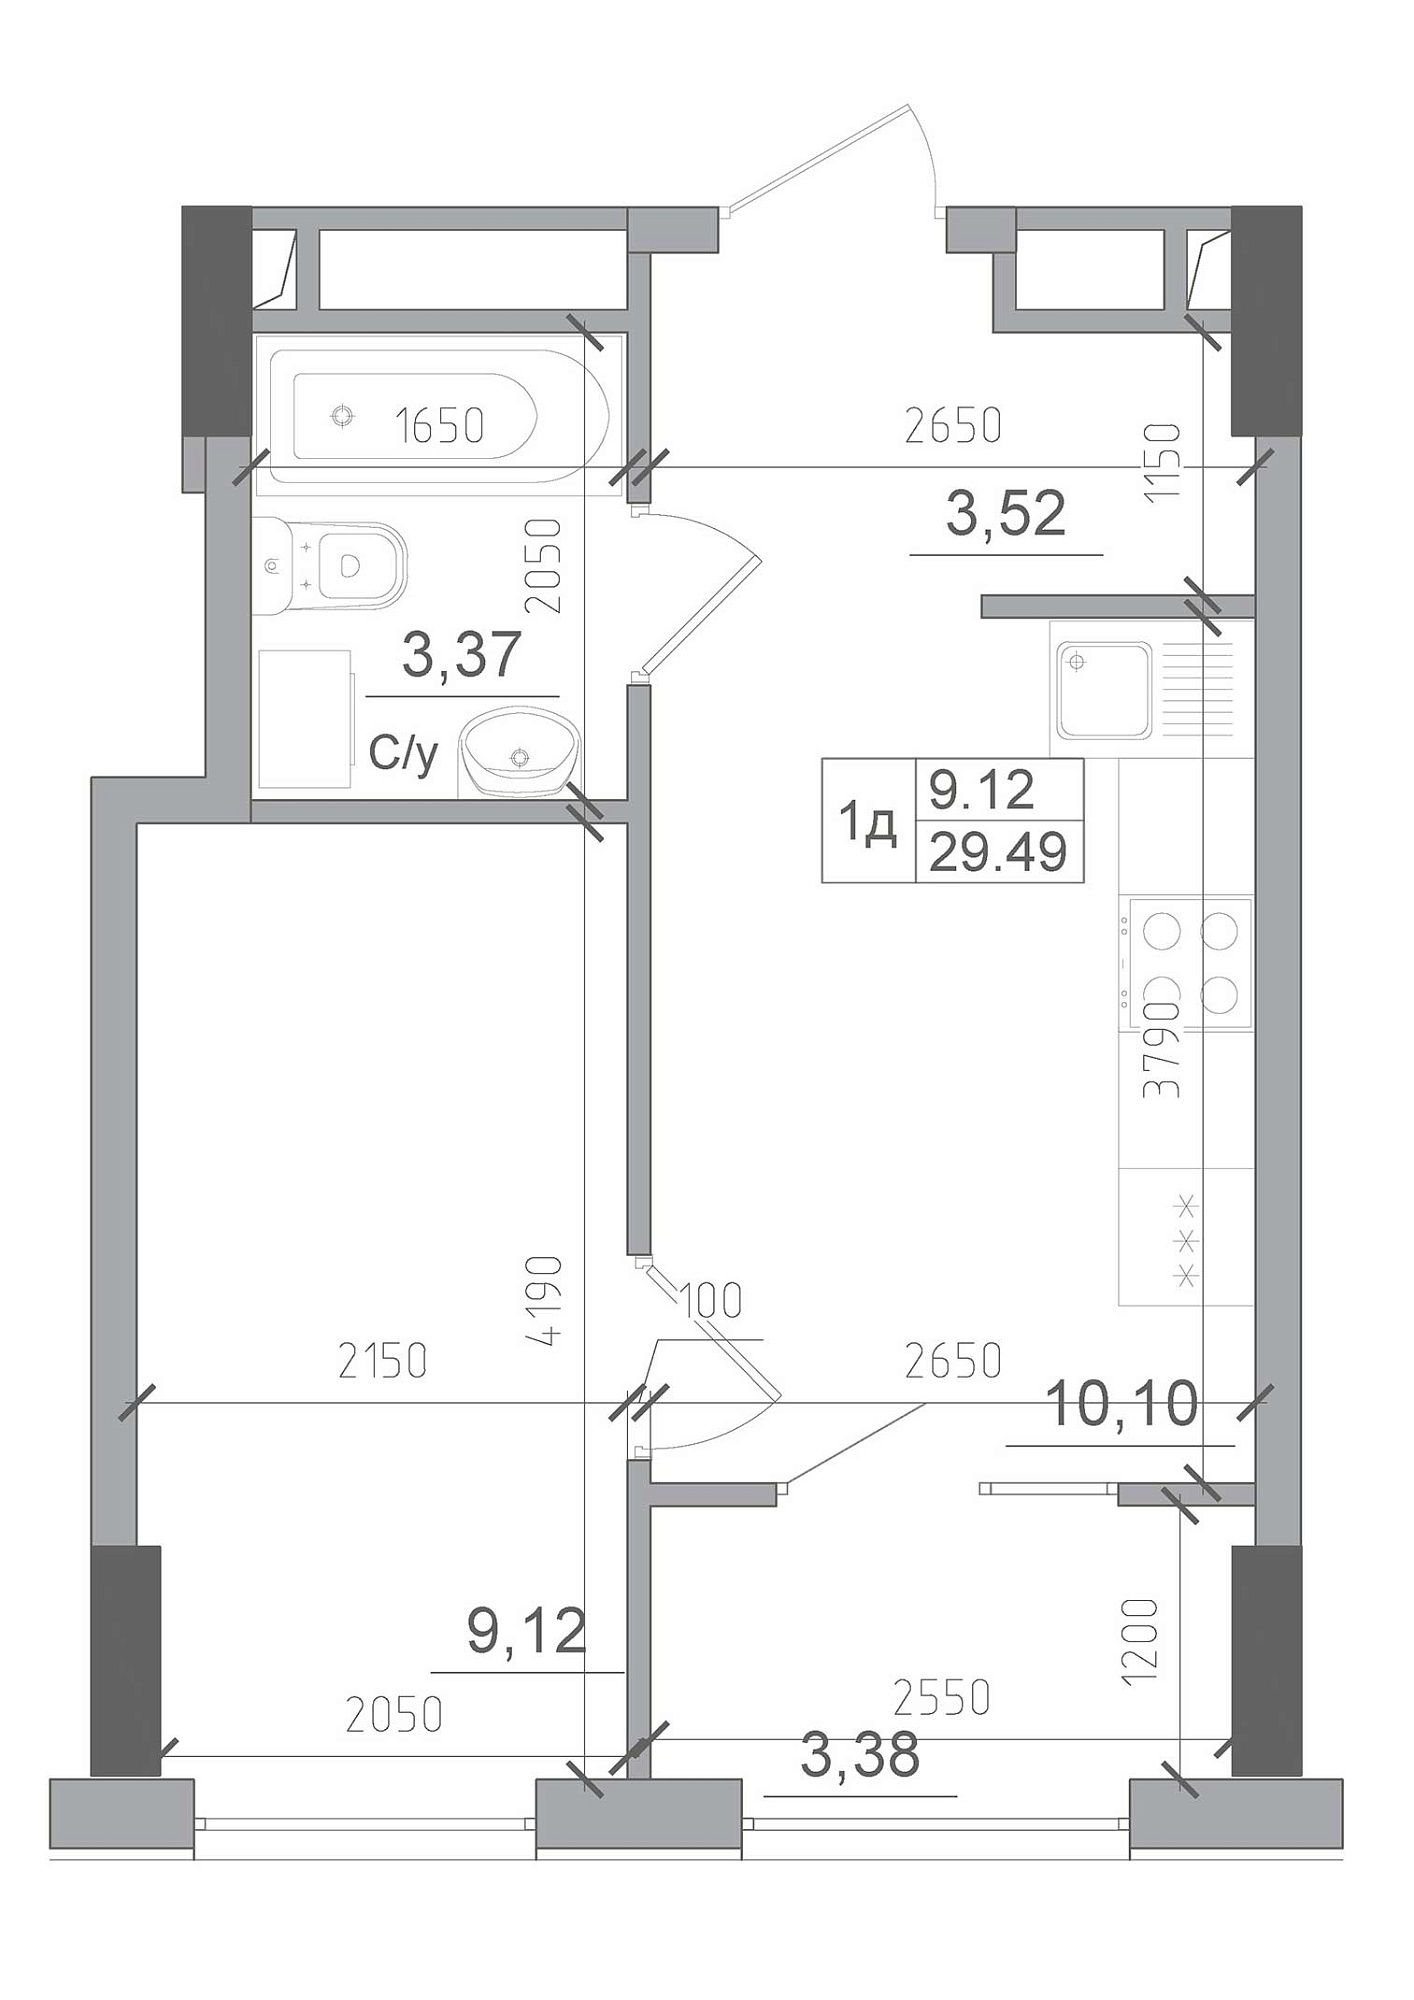 Планування 1-к квартира площею 29.49м2, AB-22-01/00006.